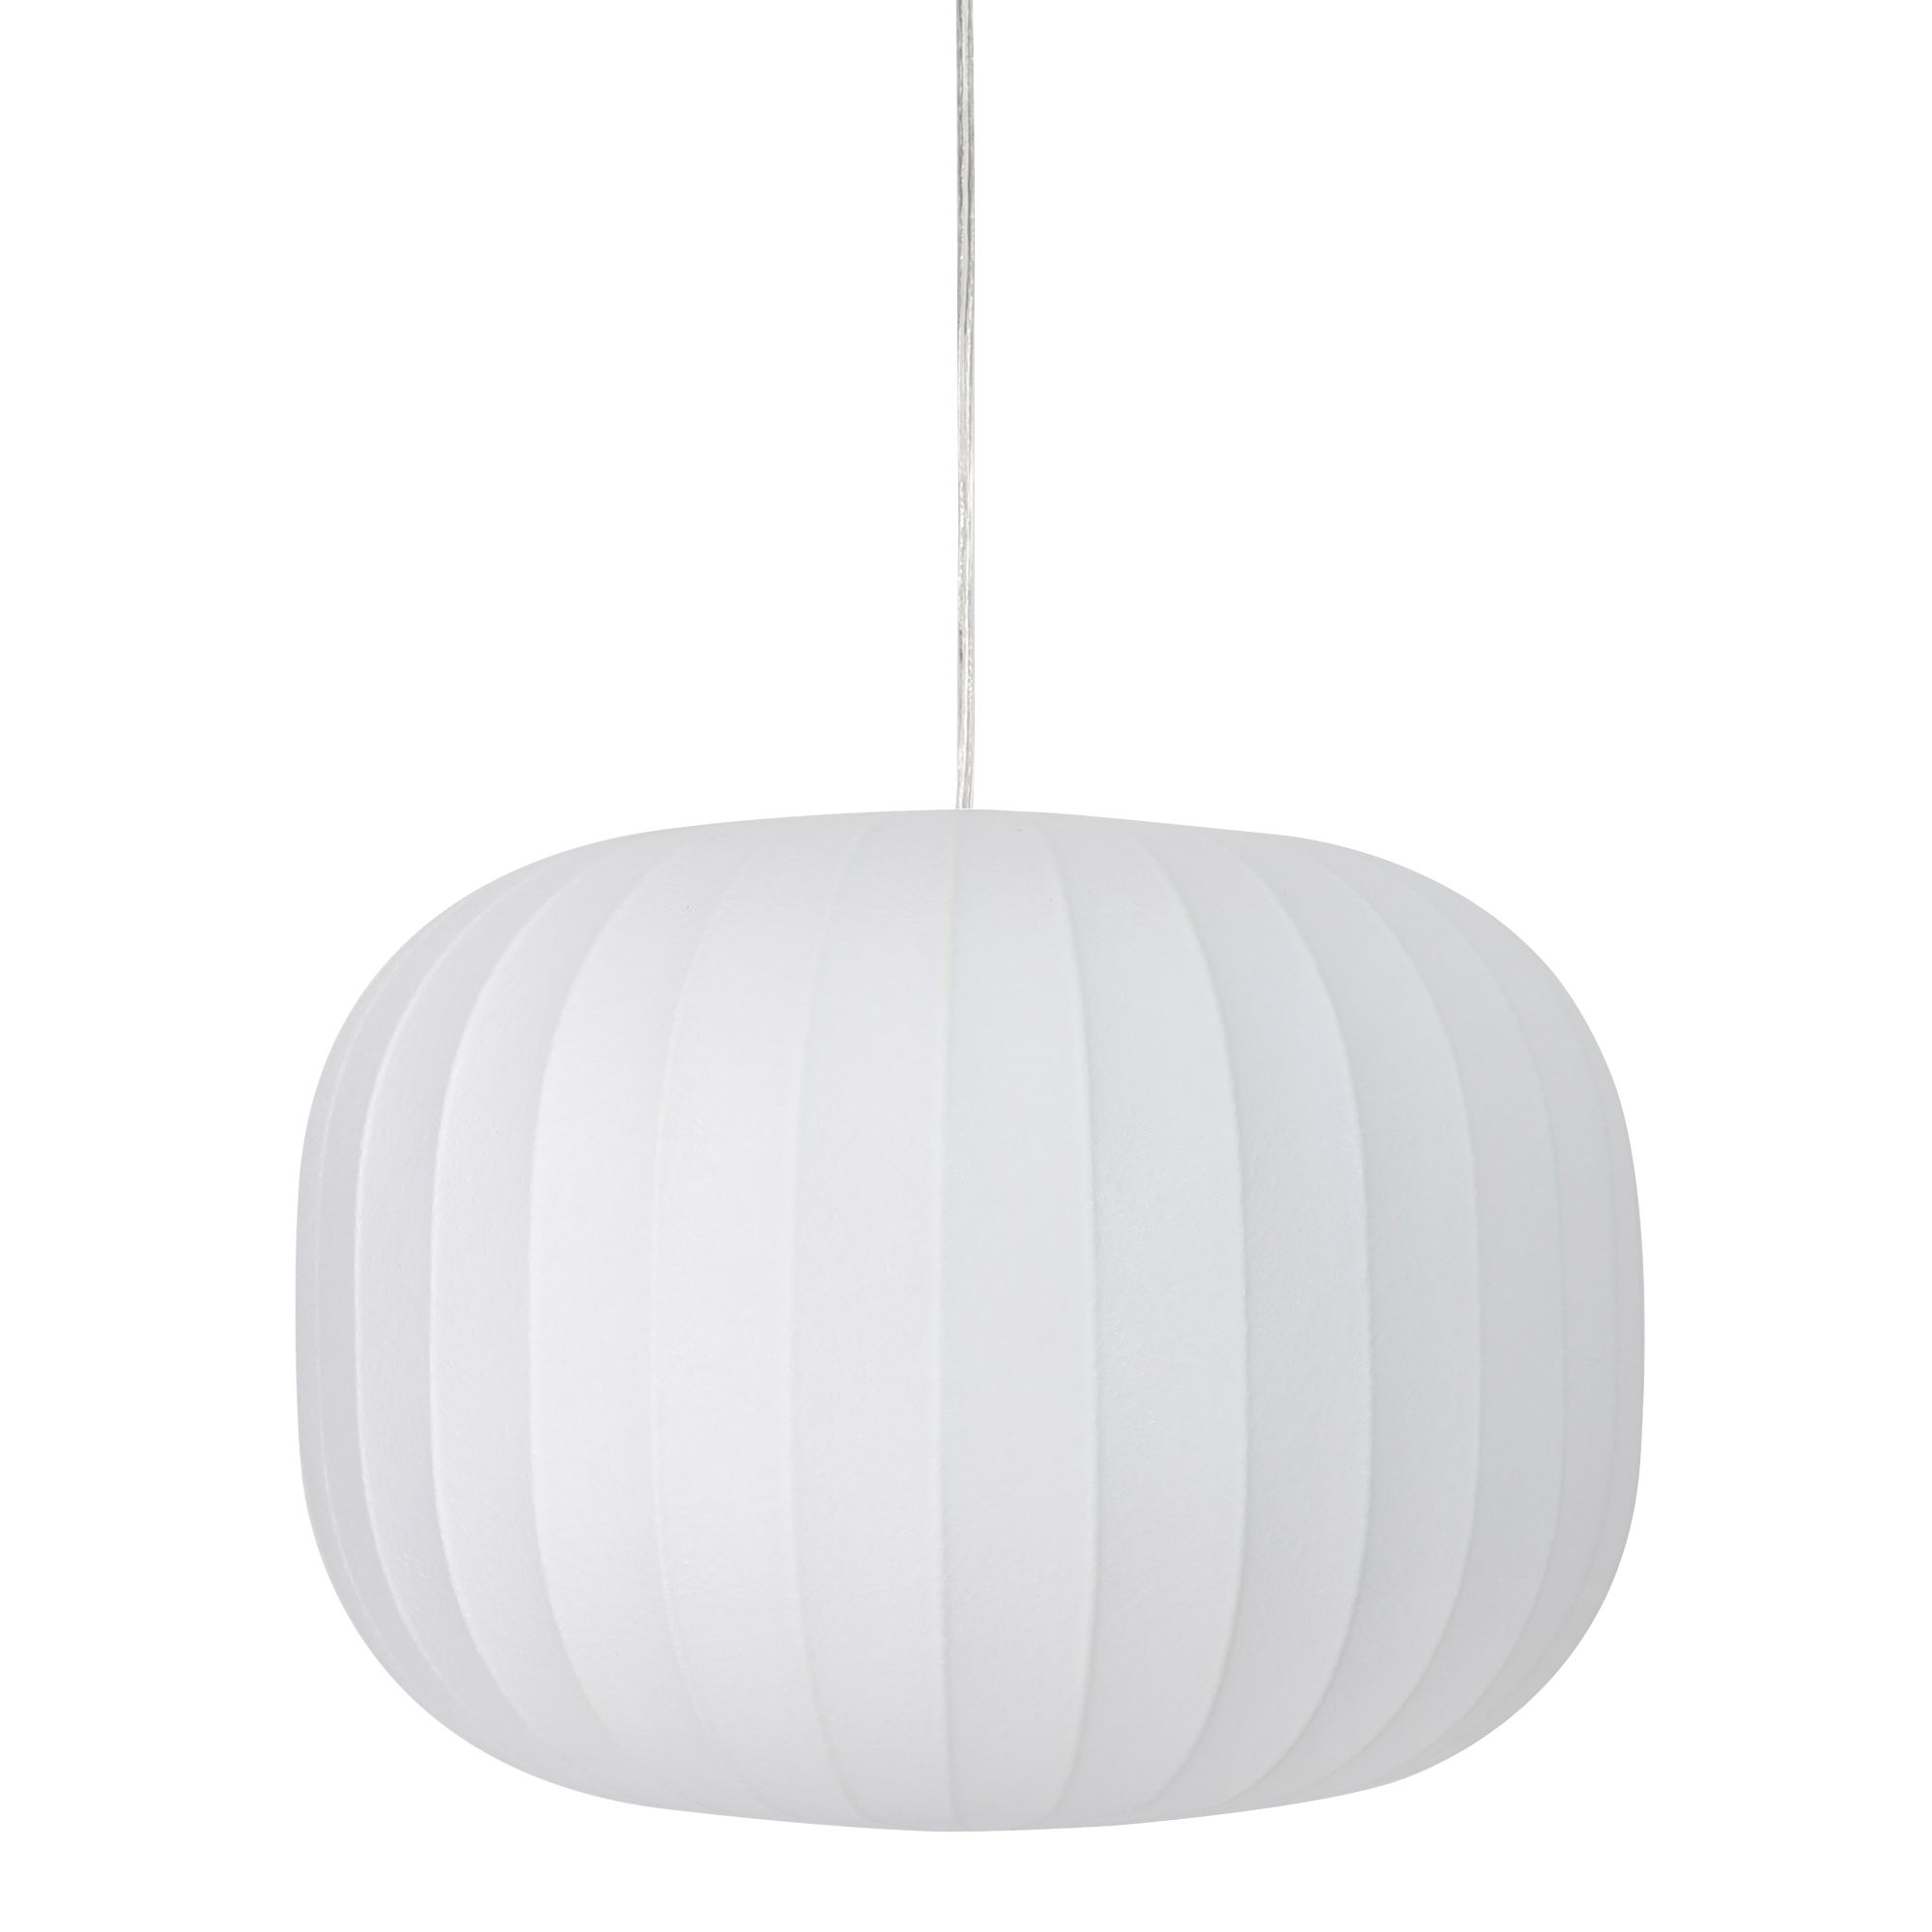 Light & Living - Hanglamp Lexa - Wit - Ø35cm